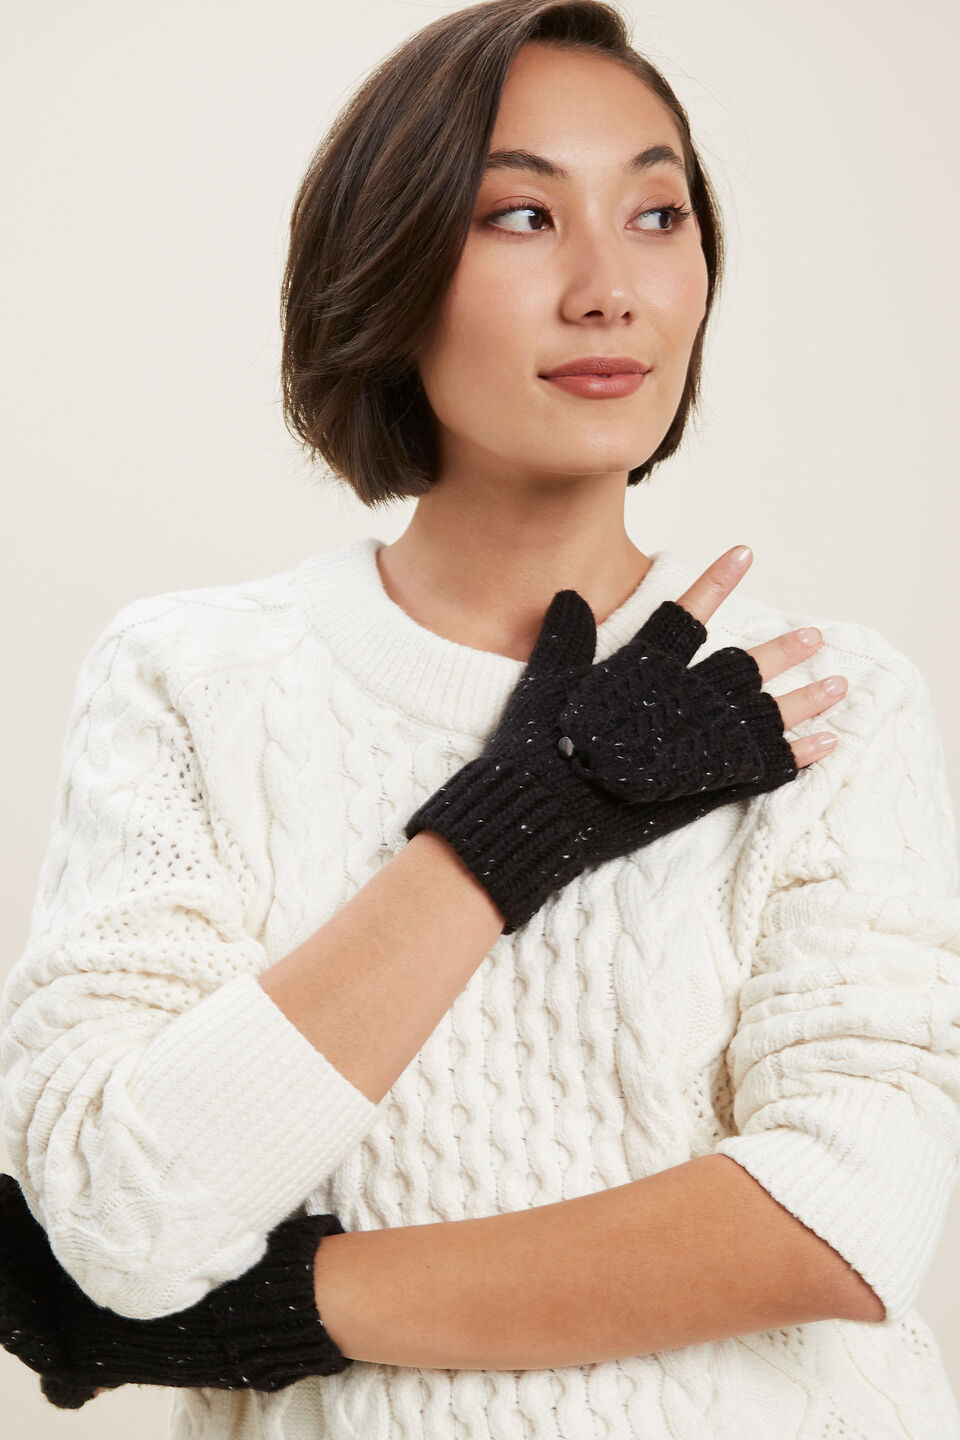 Fleck Knit Fingerless Gloves  Black